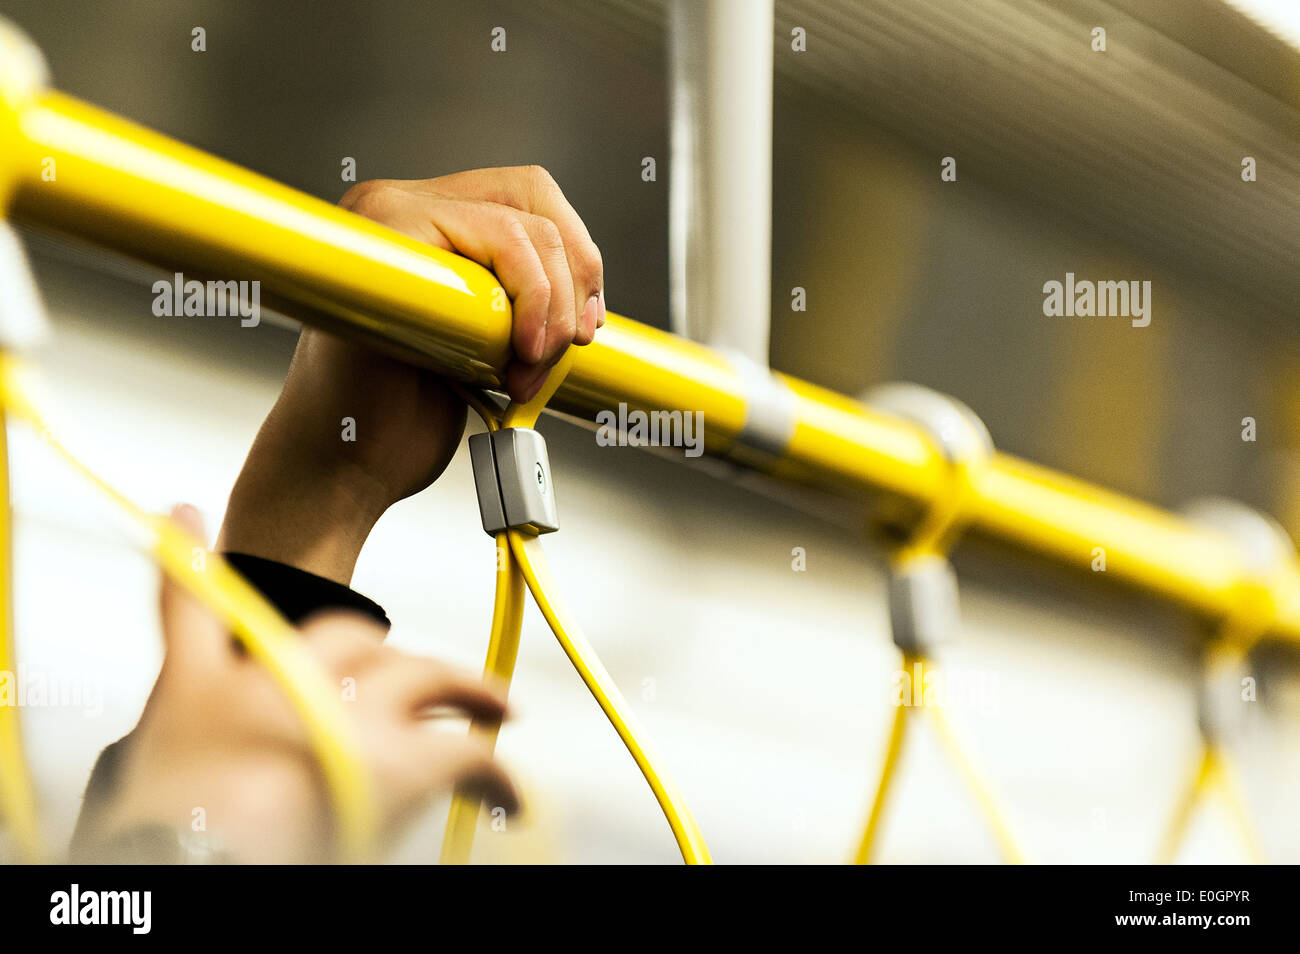 La mano de una persona sosteniendo una rampa en un concurrido tren de Metro de Londres. Foto de stock